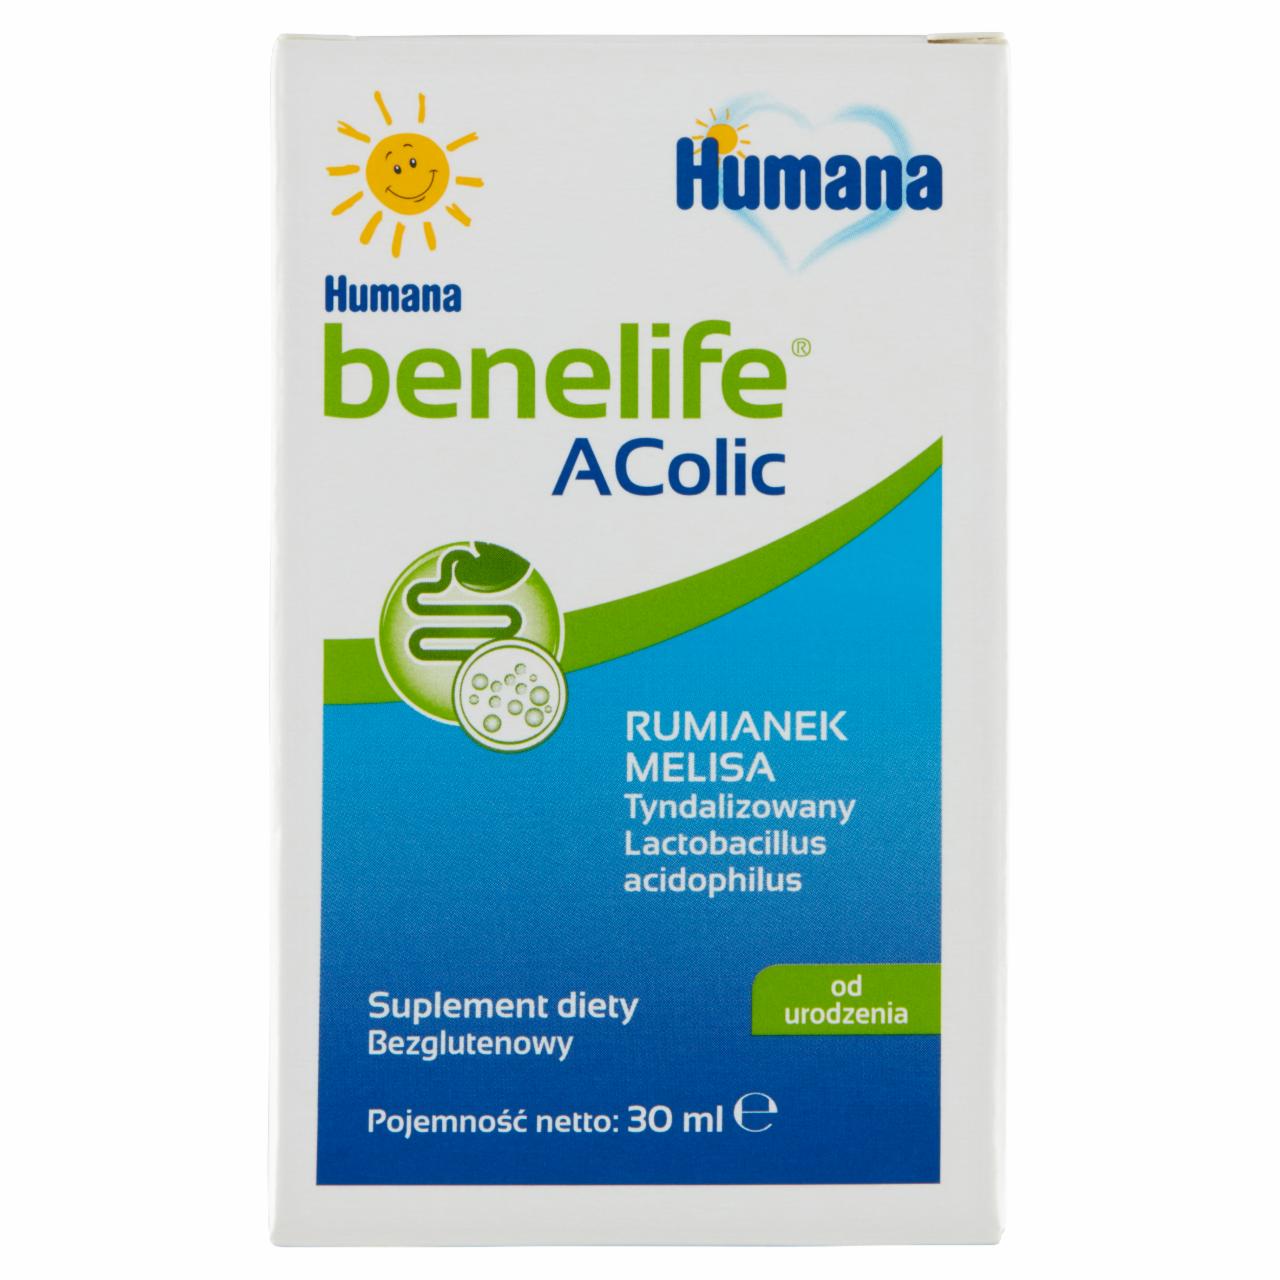 Zdjęcia - Humana benelife Suplement diety AColic od urodzenia 30 ml